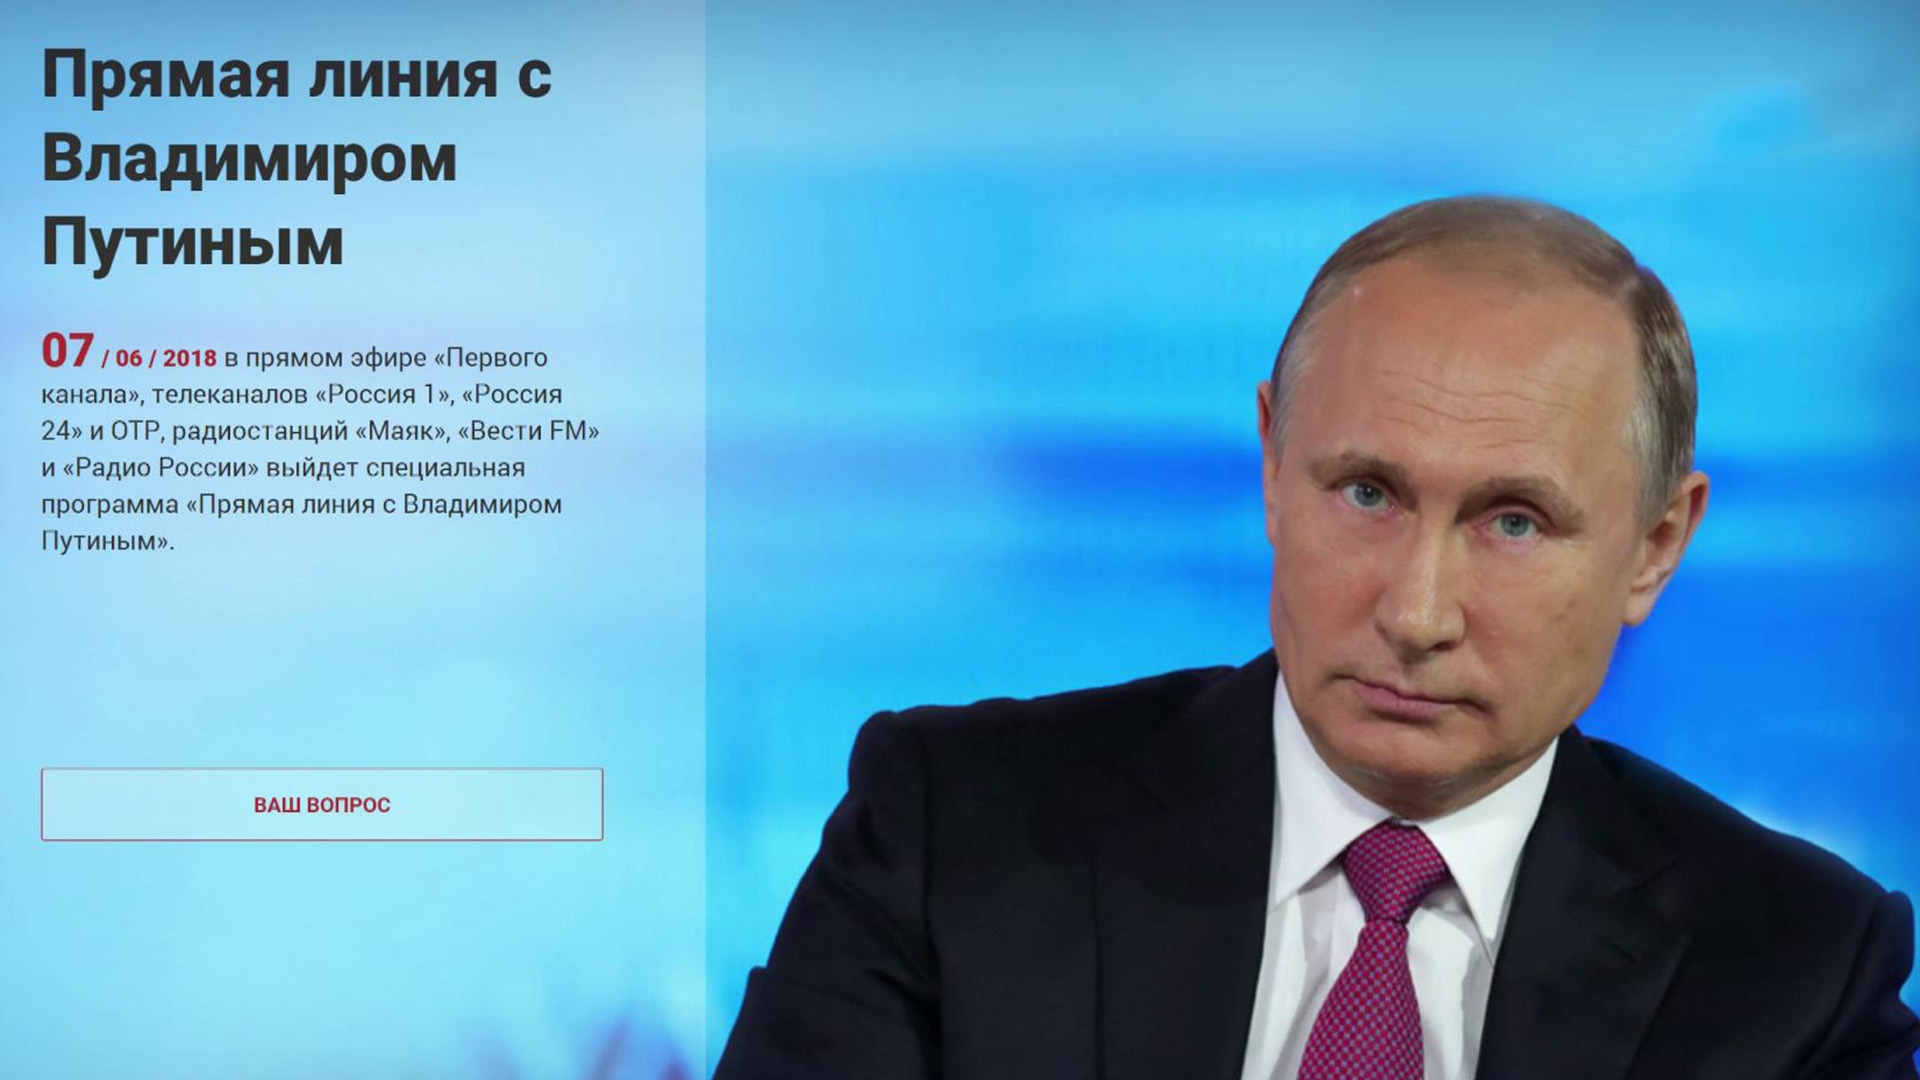 Прямой сайт президента. Прямая линия с Путиным. Прямая линия с президентом. Номер Путина. Прямая линия 2018.